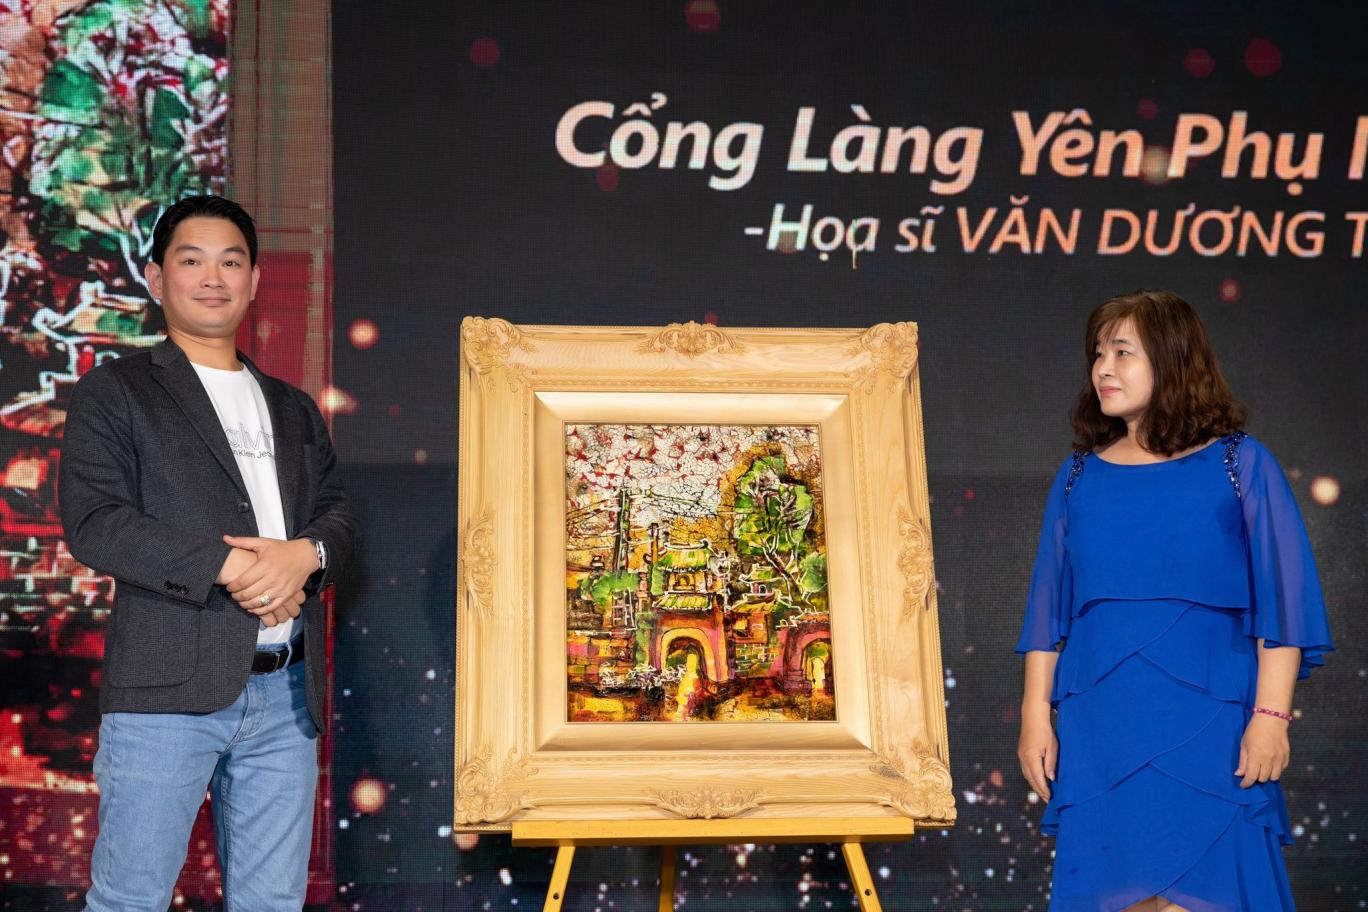 Bức tranh Cổng làng Yên Phụ mùa xuân của họa sĩ Văn Dương Thành